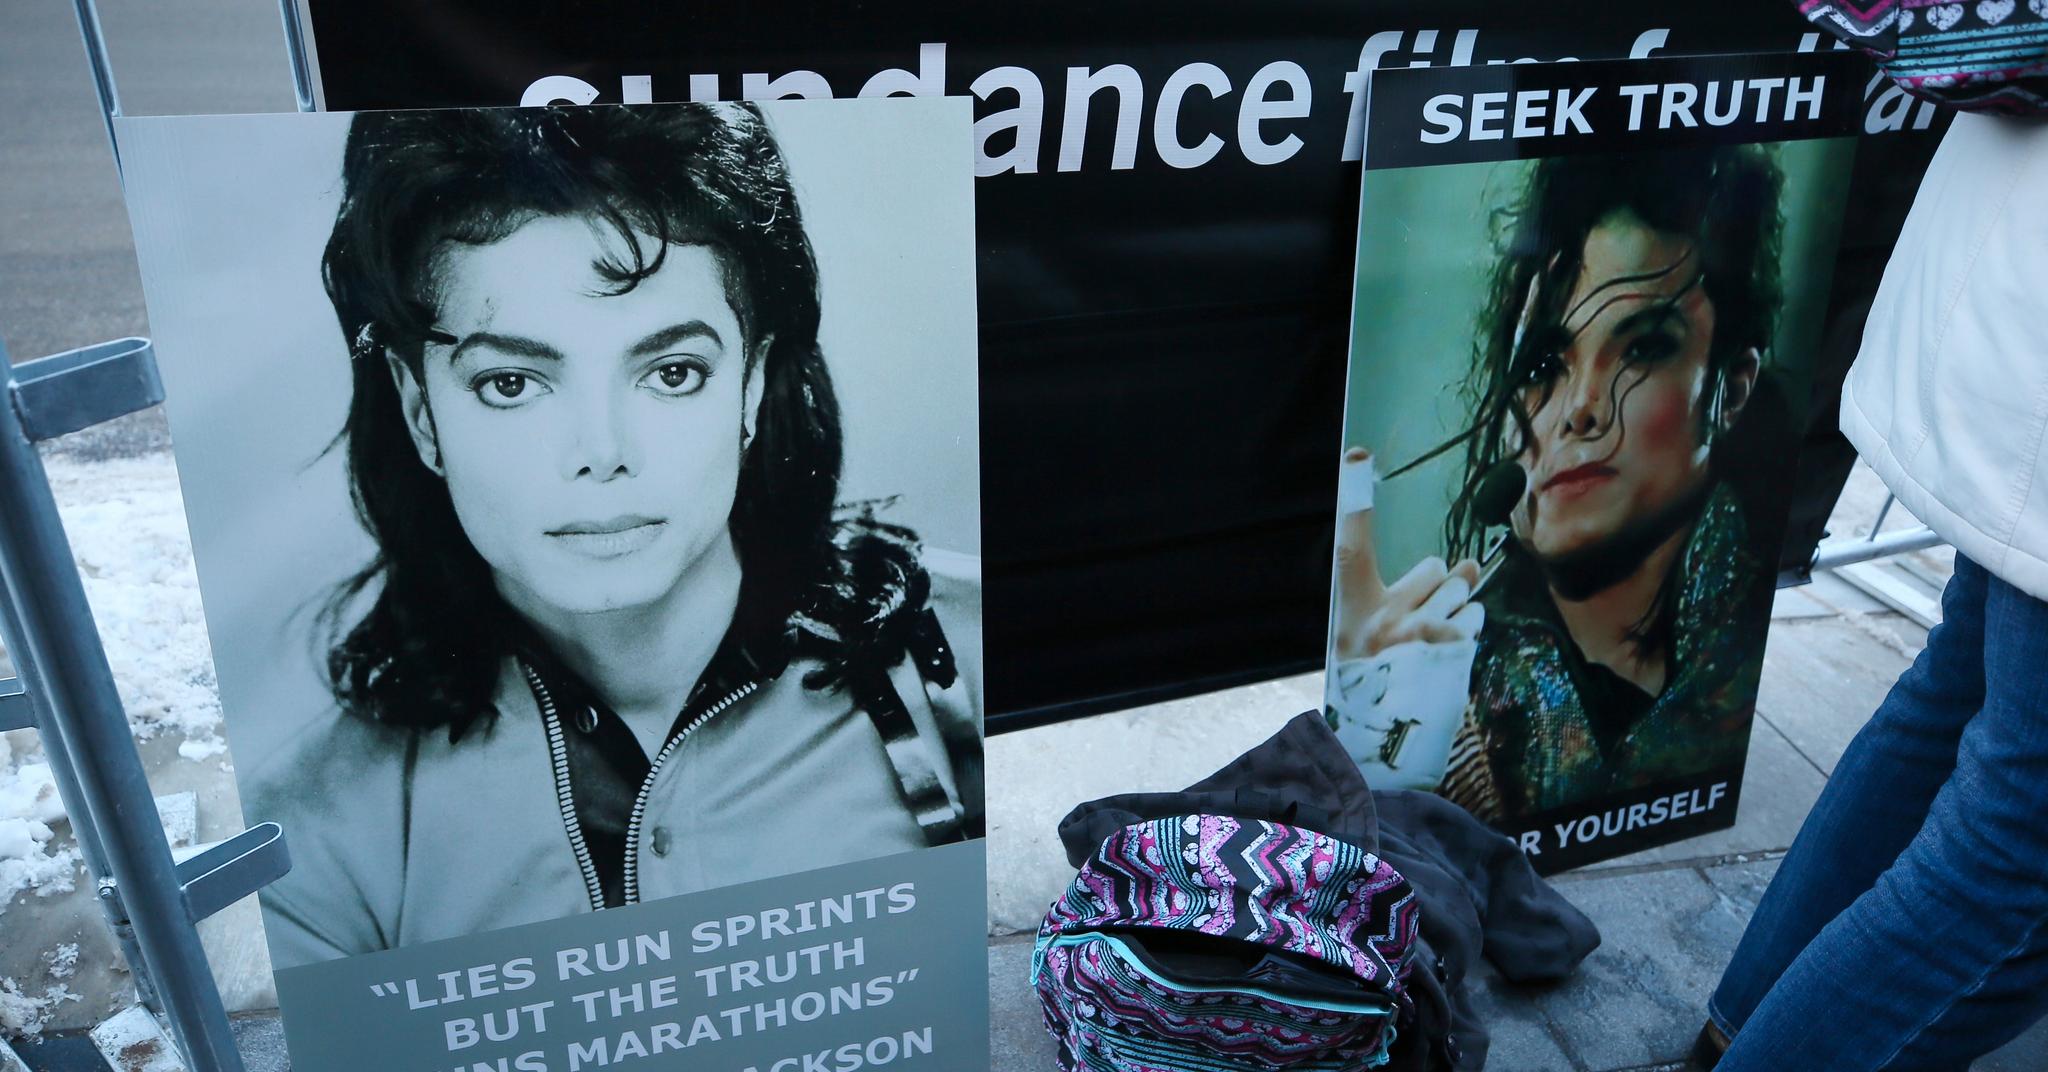 HBOs nye dokumentar om Michael Jackson og hans angivelige seksuelle misbruk av to mindreårige gutter, har skapt sterke reaksjoner. Filmen hadde premiere under Sundance-festivalen i forrige uke.